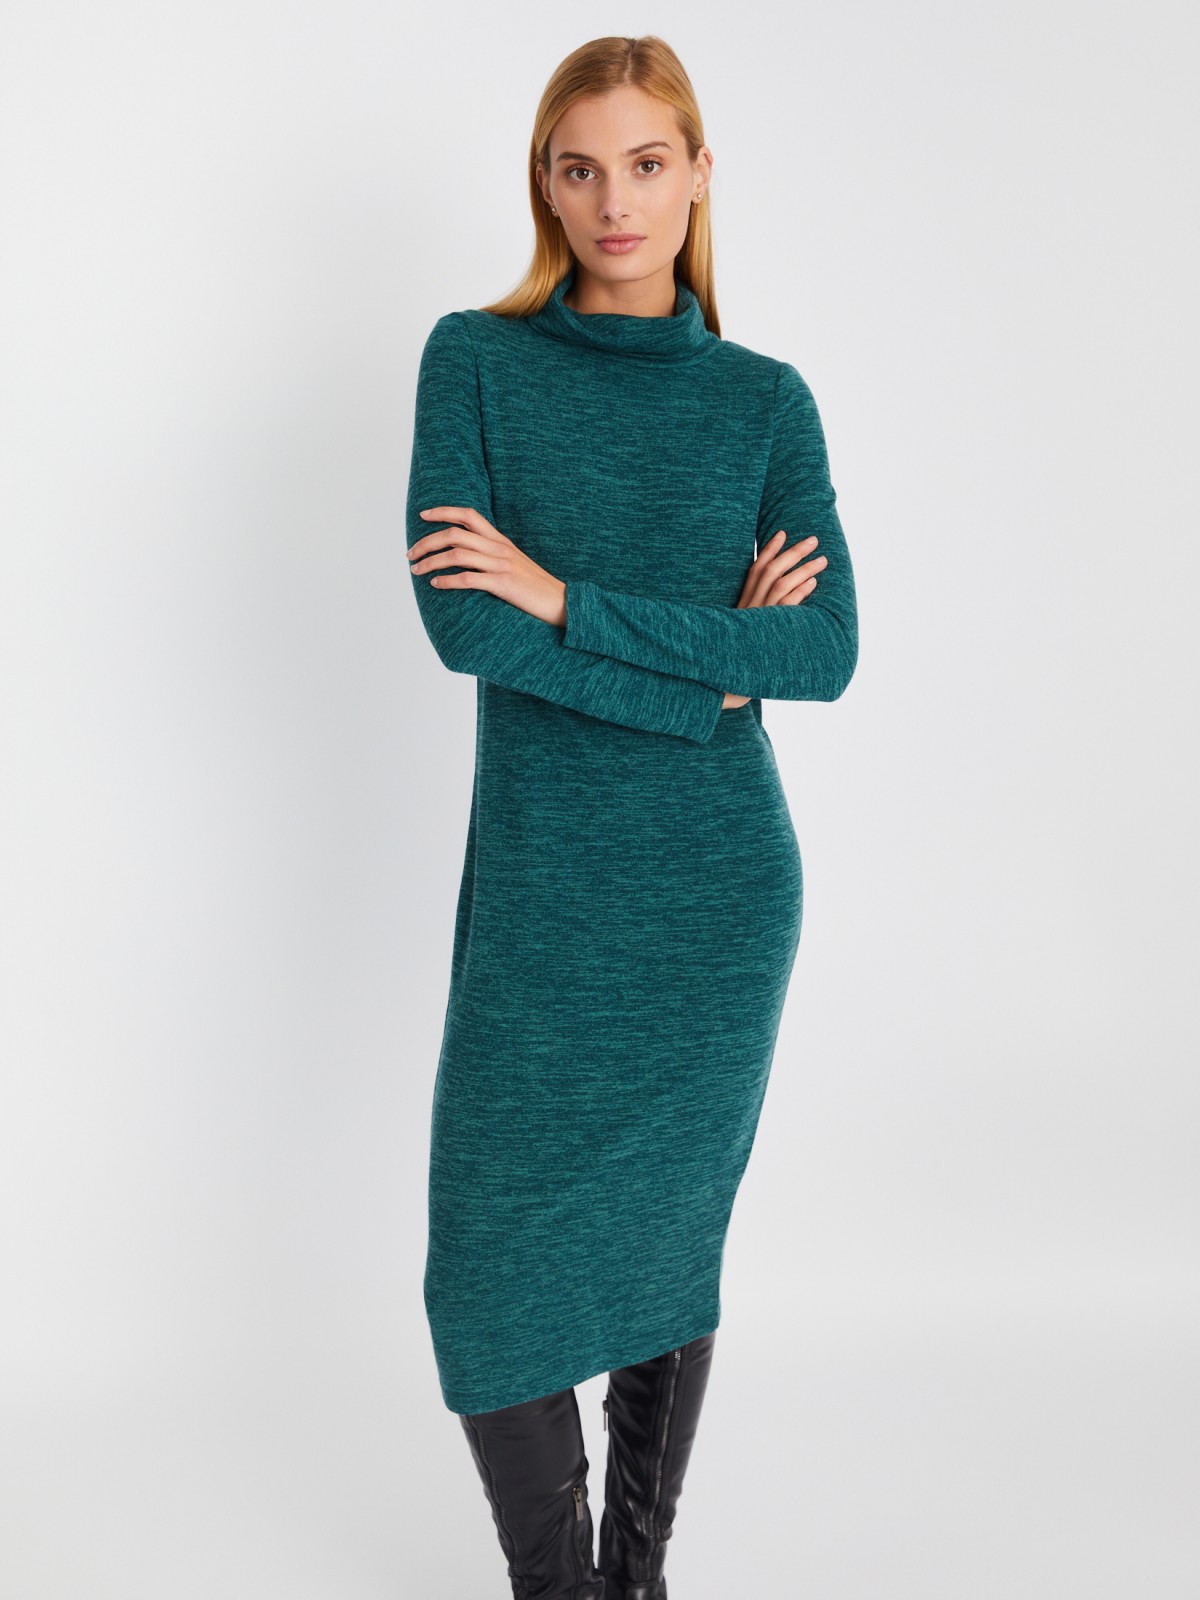 Трикотажное платье-свитер длины миди с высоким горлом zolla 02334819F062, цвет мятный, размер XS - фото 1